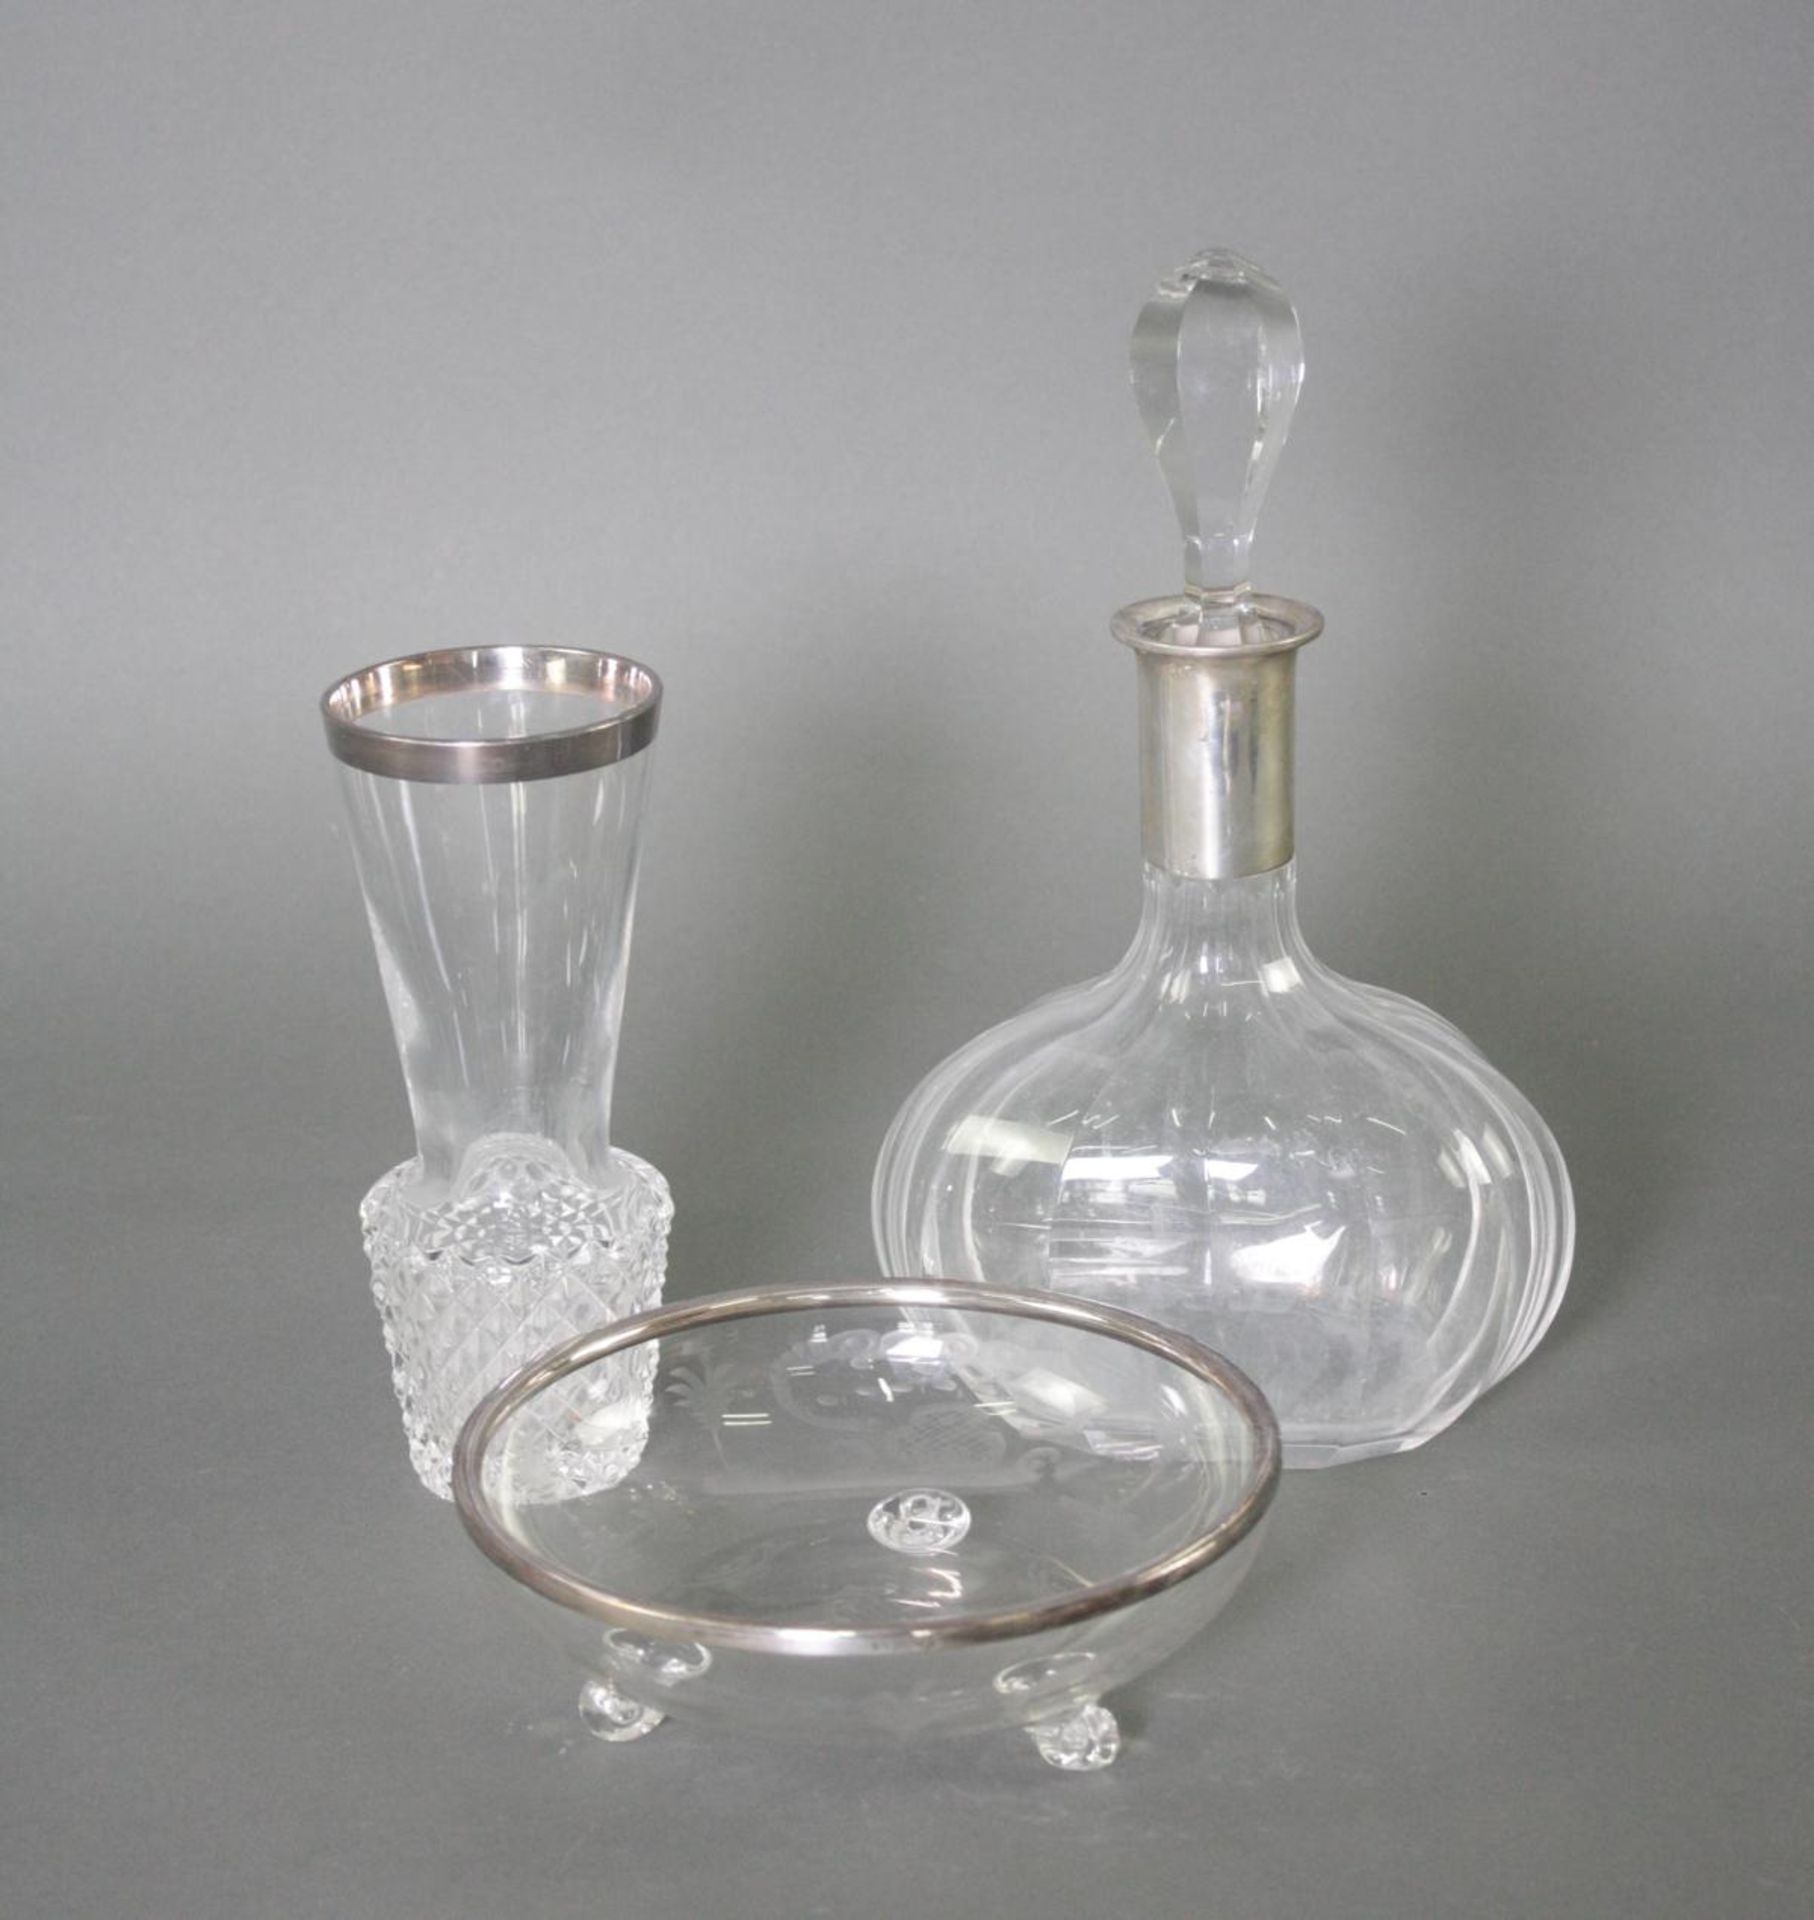 3 Teile Kristall mit Silbermontur. Karaffe, Schale und Vase